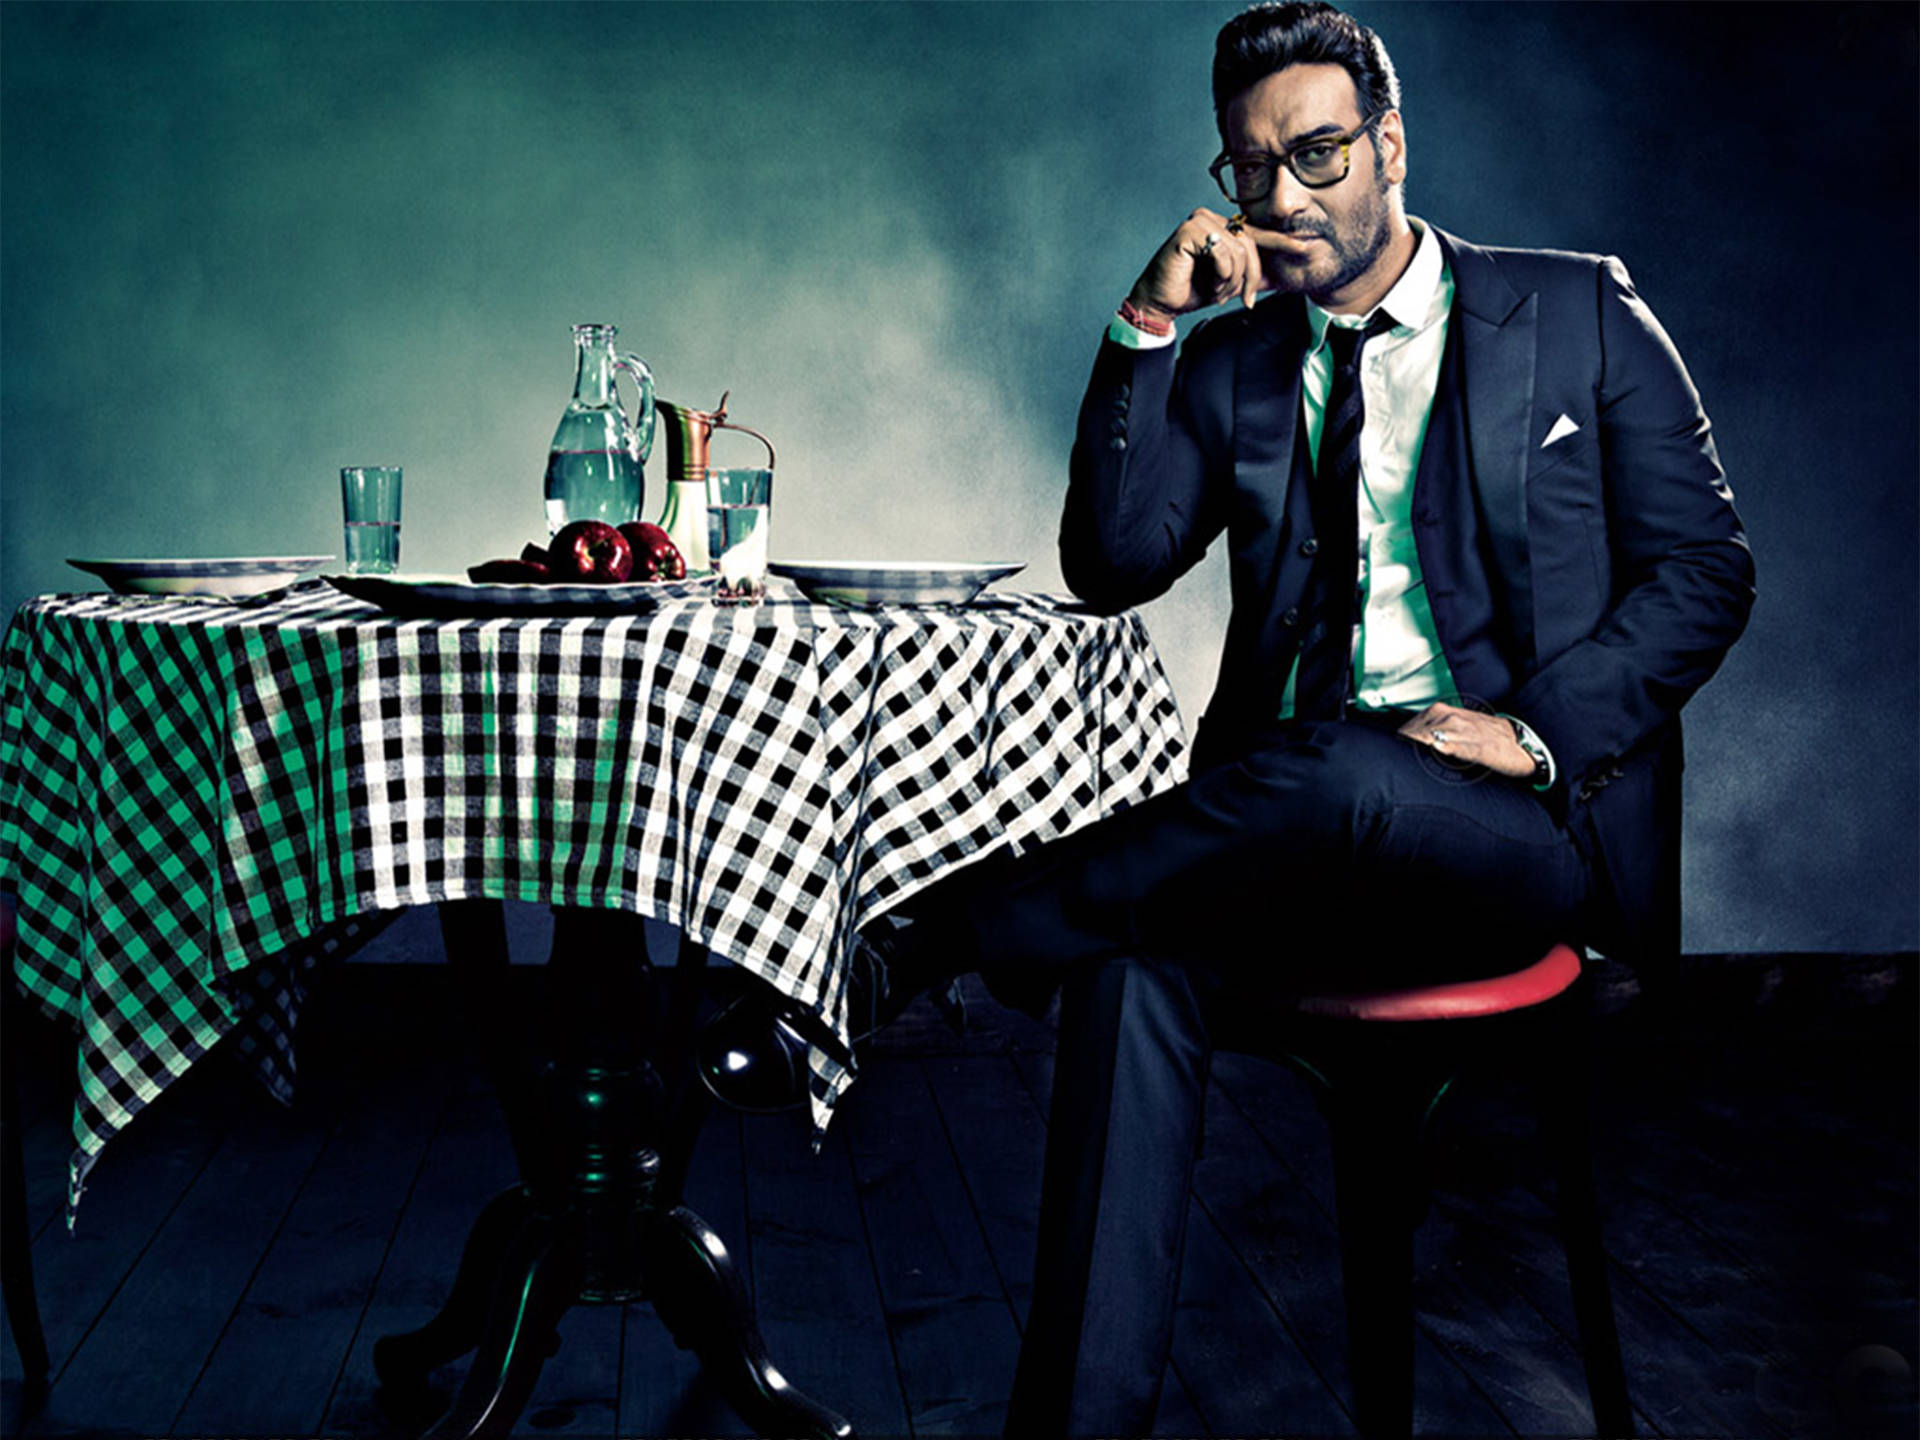 Ajay Devgn Tuxedo Outfit For GQ Wallpaper